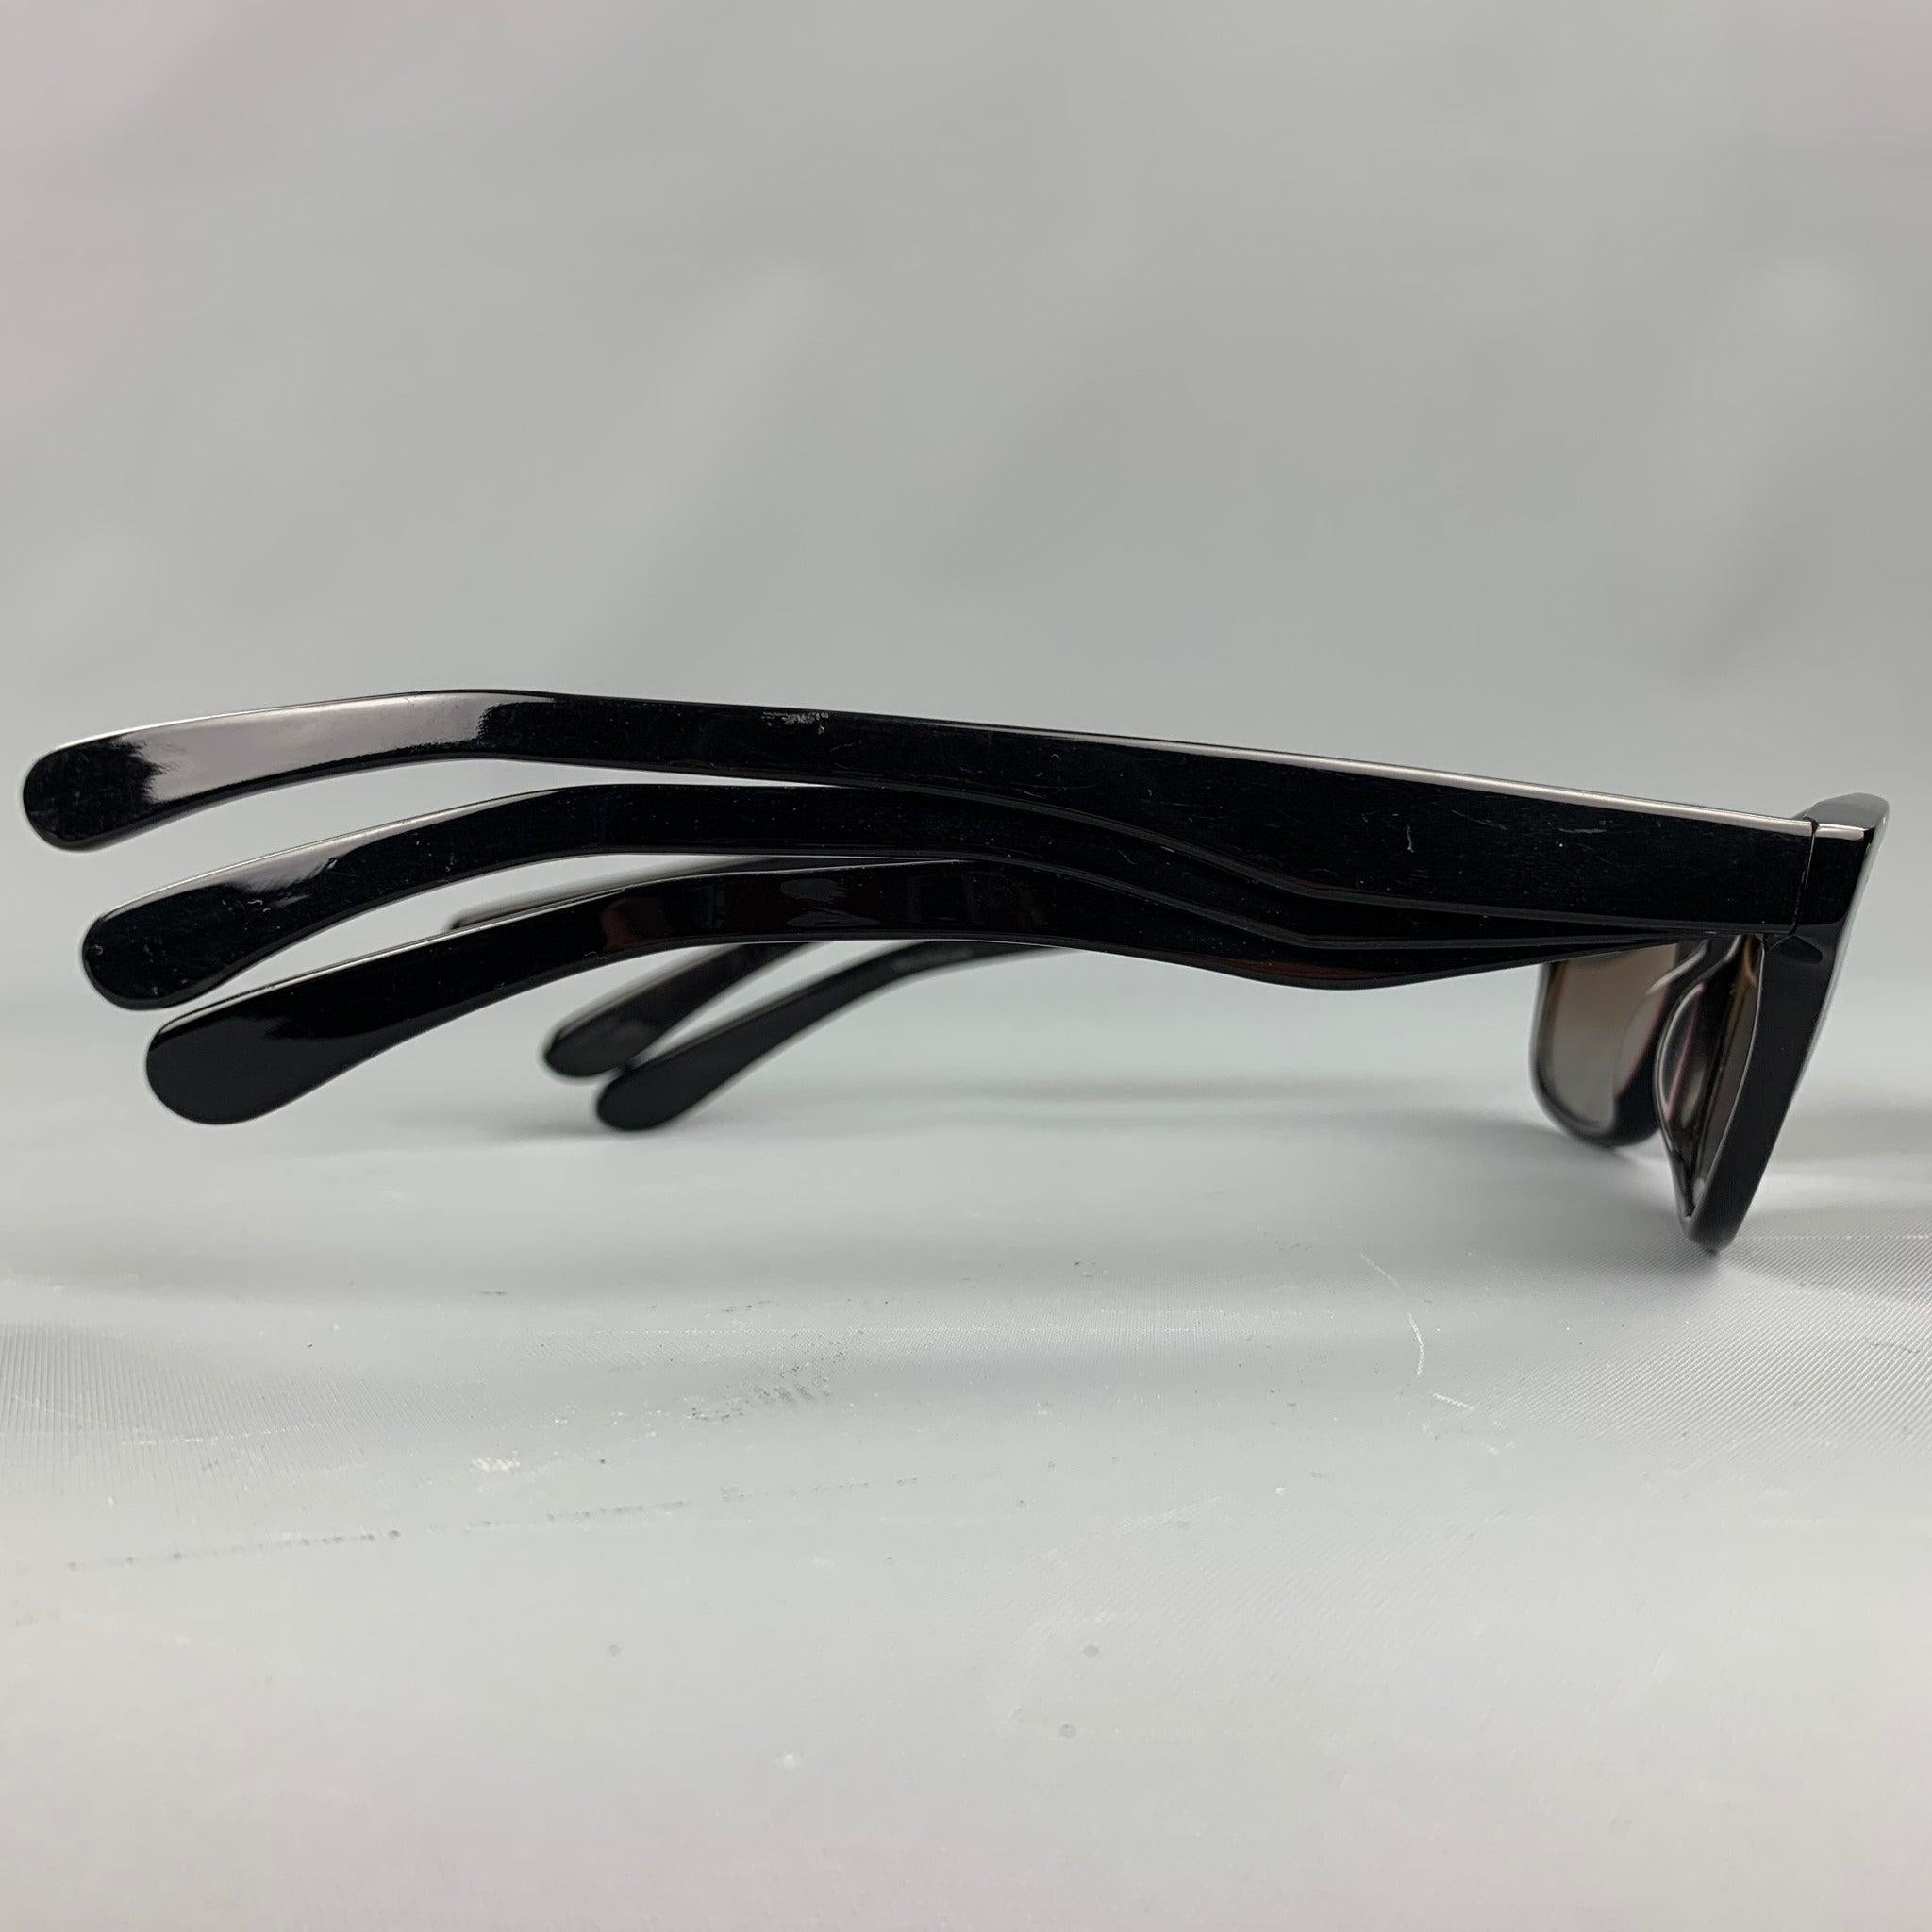 Vintage JEAN PAUL GAULTIER by MIKLI Sonnenbrille aus schwarzem Acetat mit drei Bügeln und ovaler Form. Hergestellt in Frankreich. So wie es ist. Gut
Gebrauchtes Zustand. 

Markiert:   GL1101 0101 4520 

Abmessungen: 
   Länge: 16 cm, Höhe: 4 cm.
  
